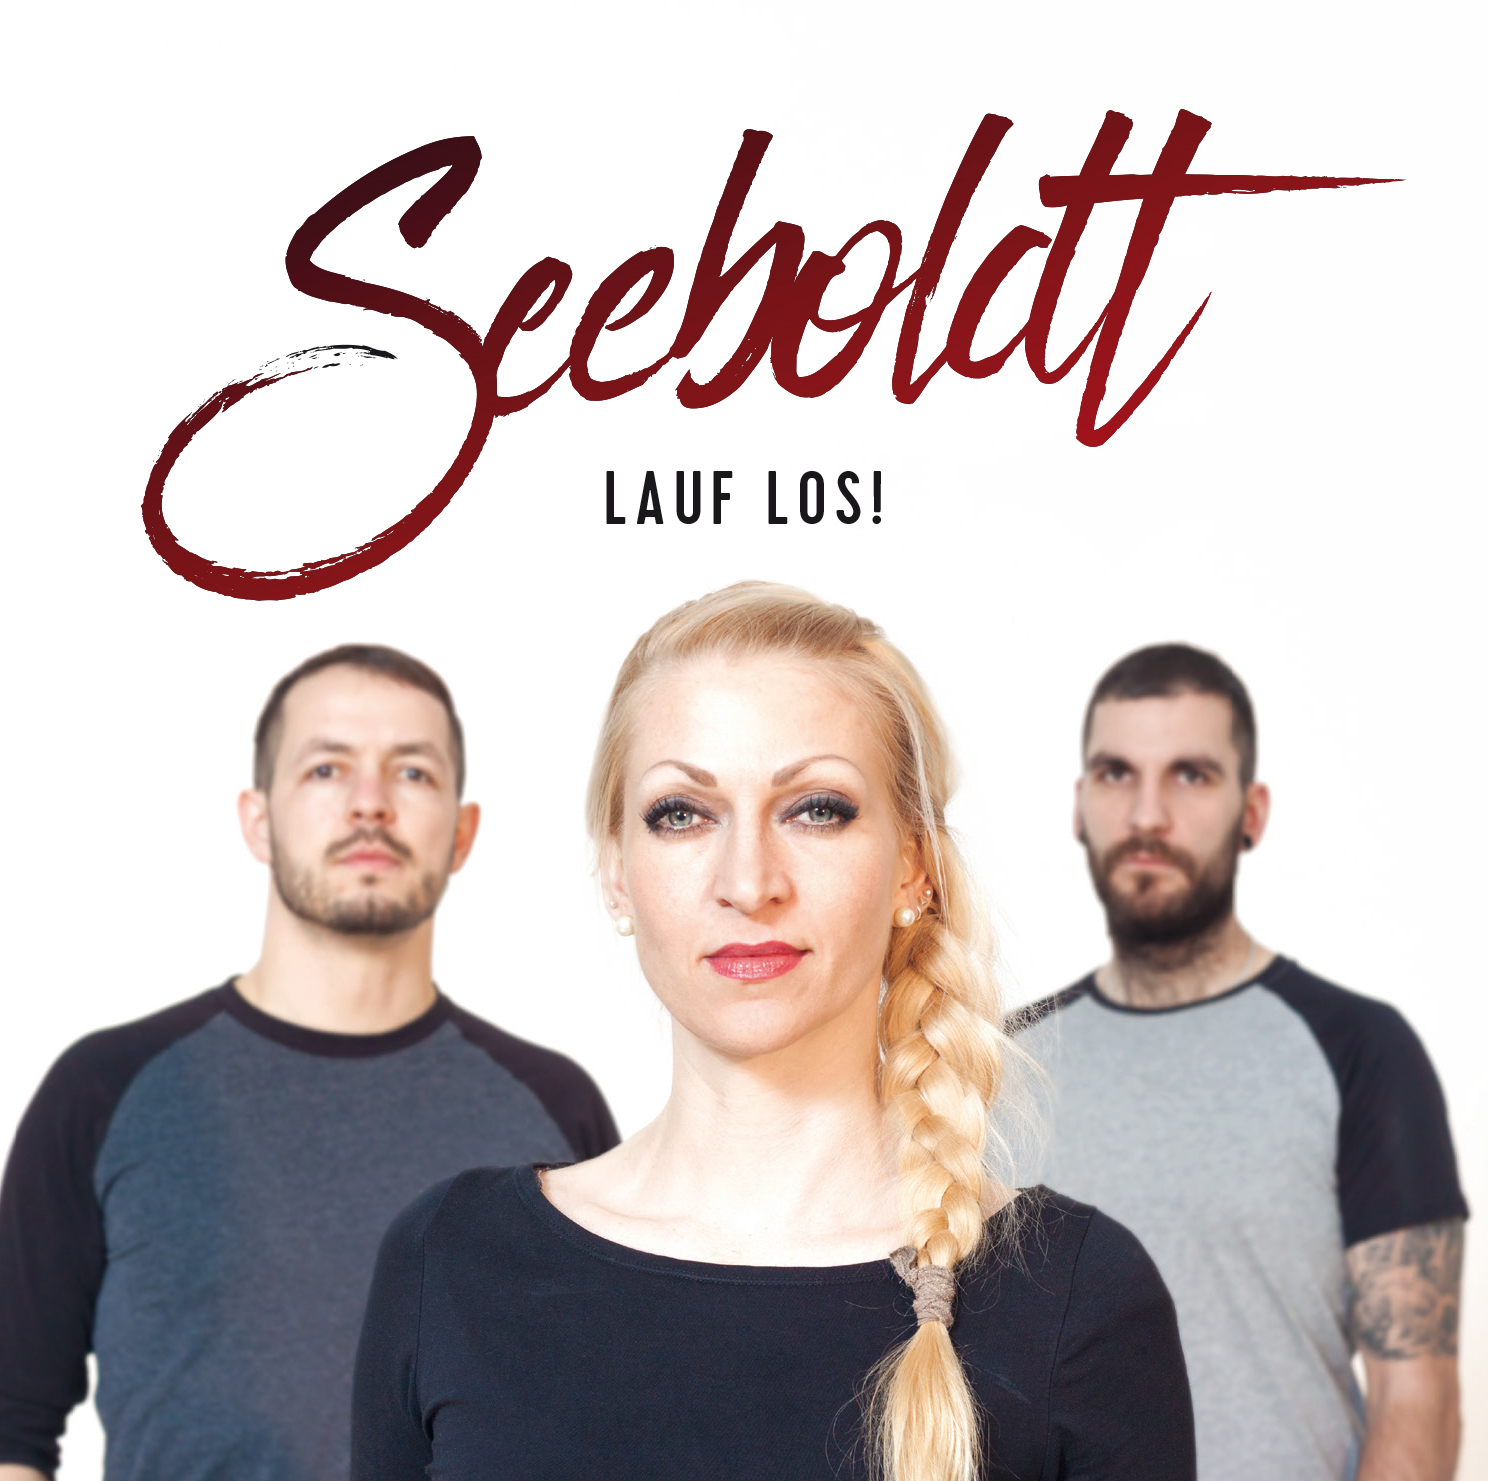 Seeboldt-Lauf_Los-Cover